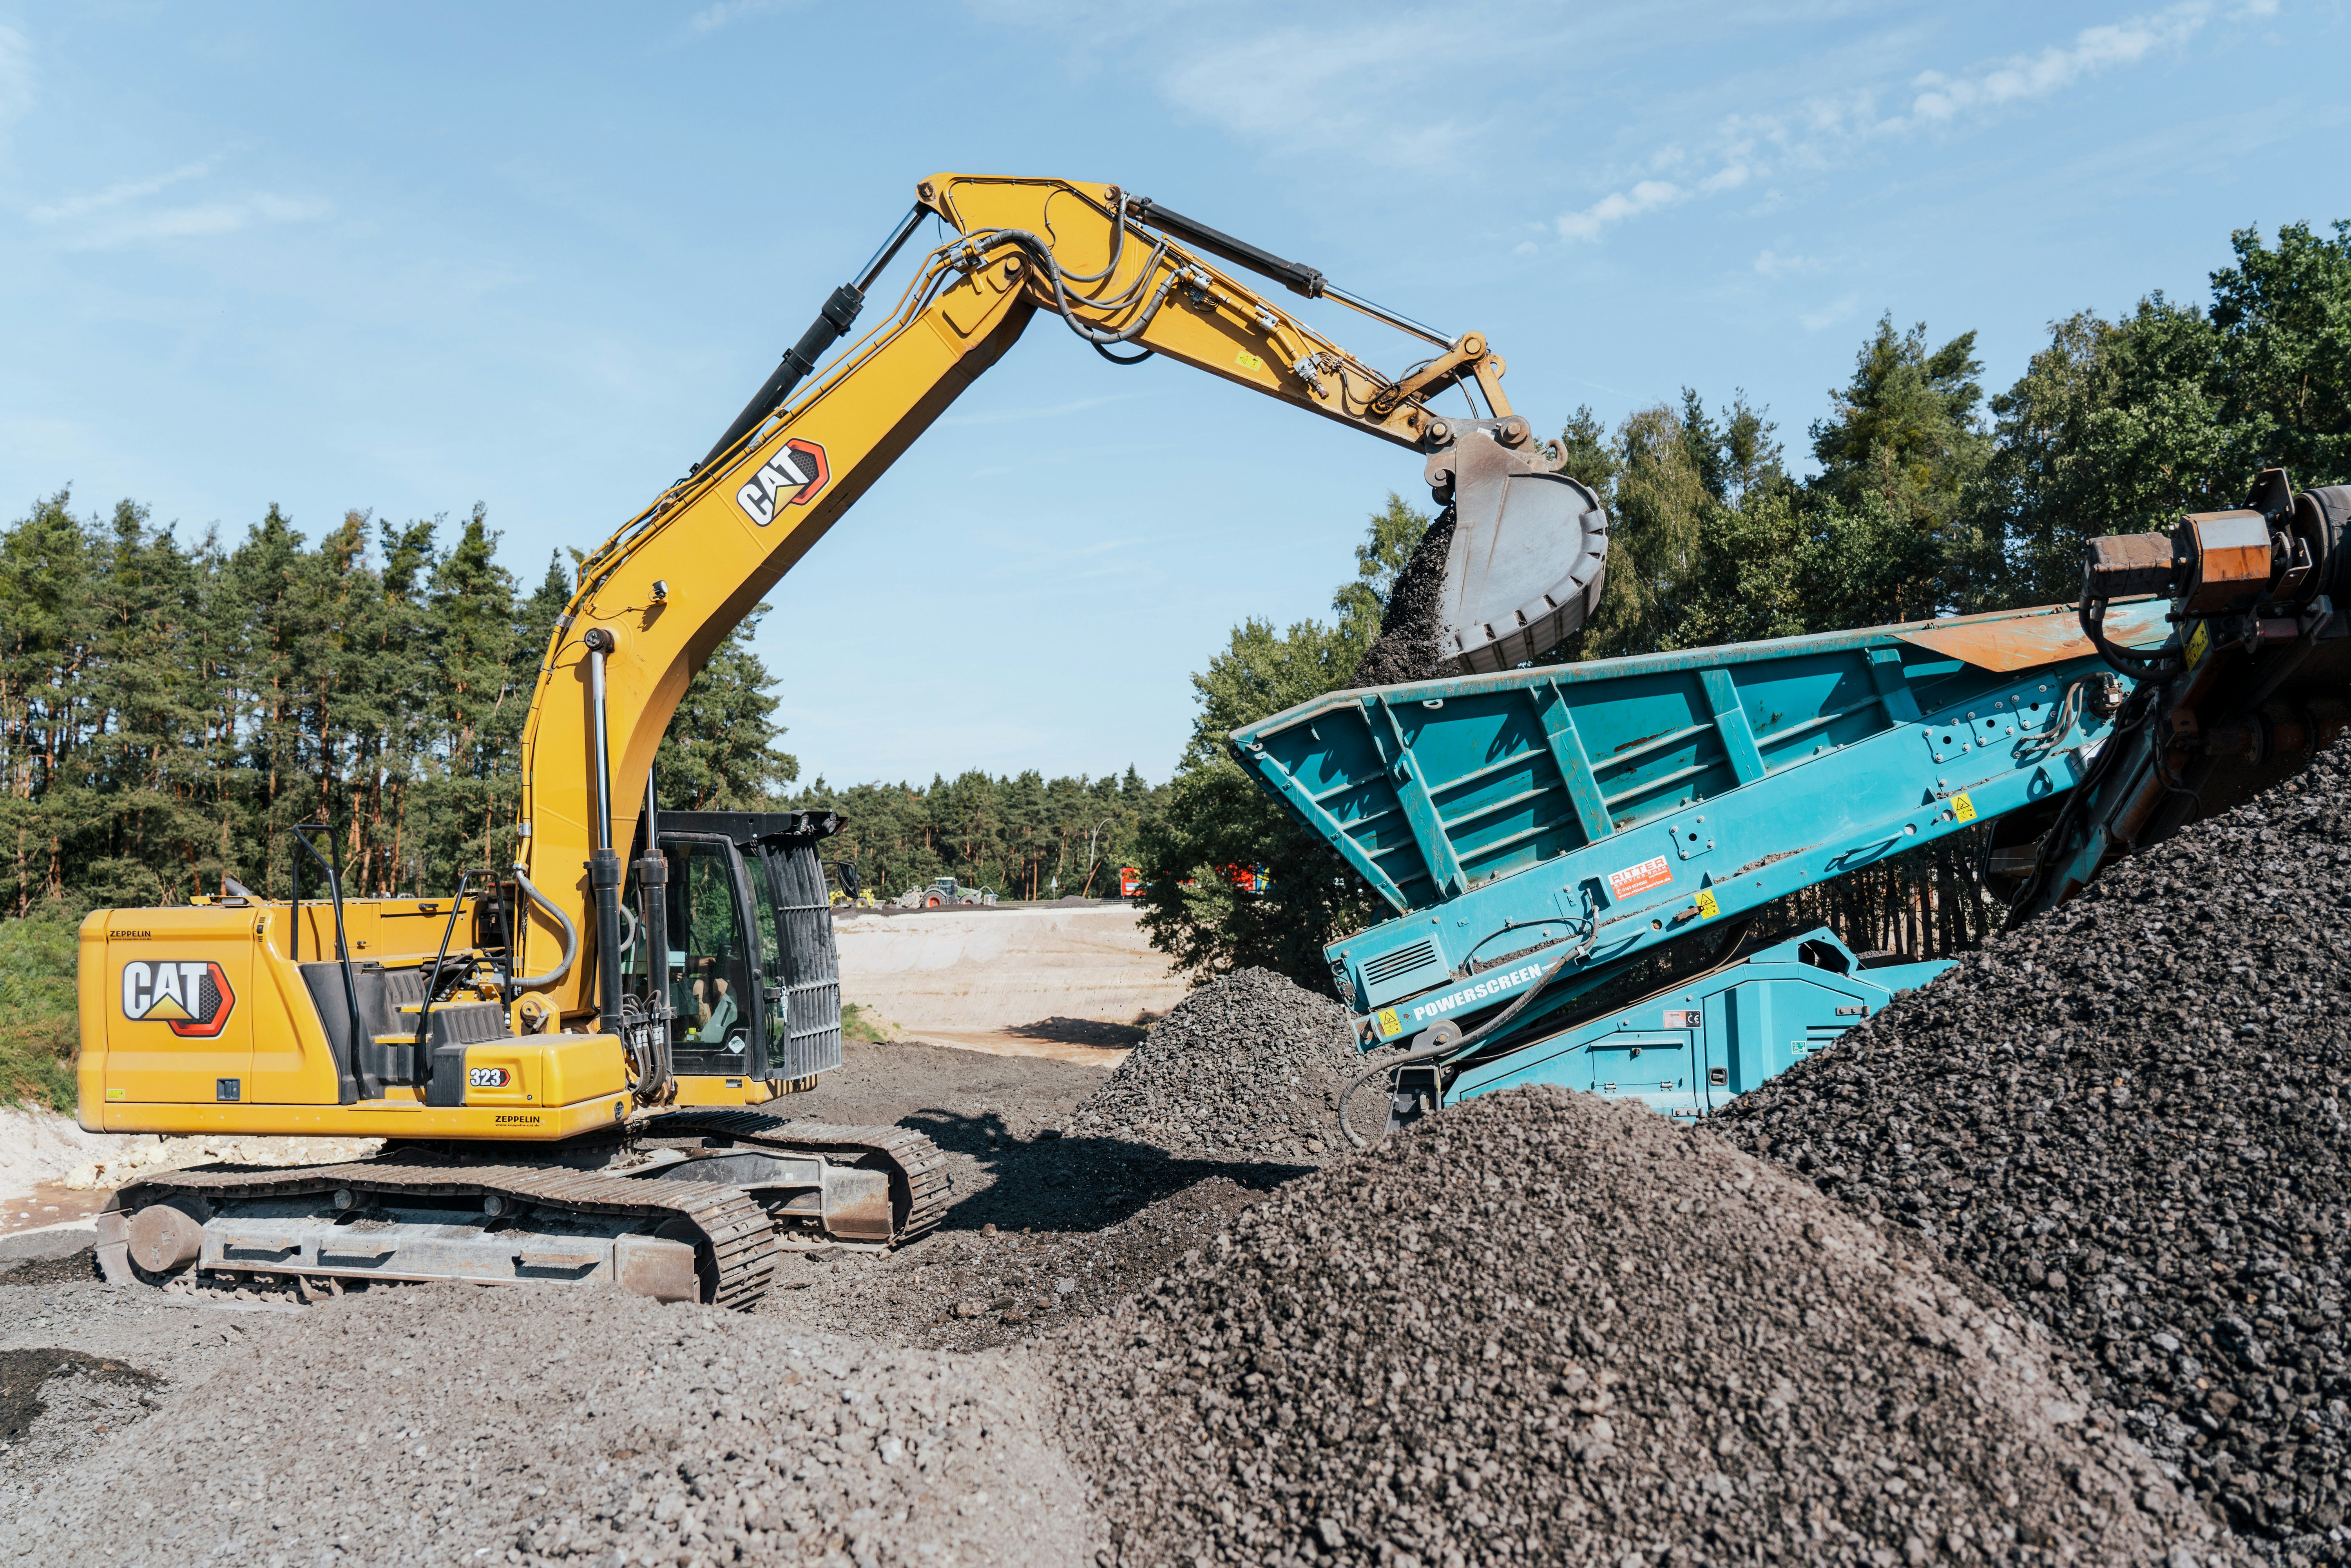 Baustelle auf der A6 bei Triebendorf: Bagger belädt Brecher für Recycling von Abbruchmaterial